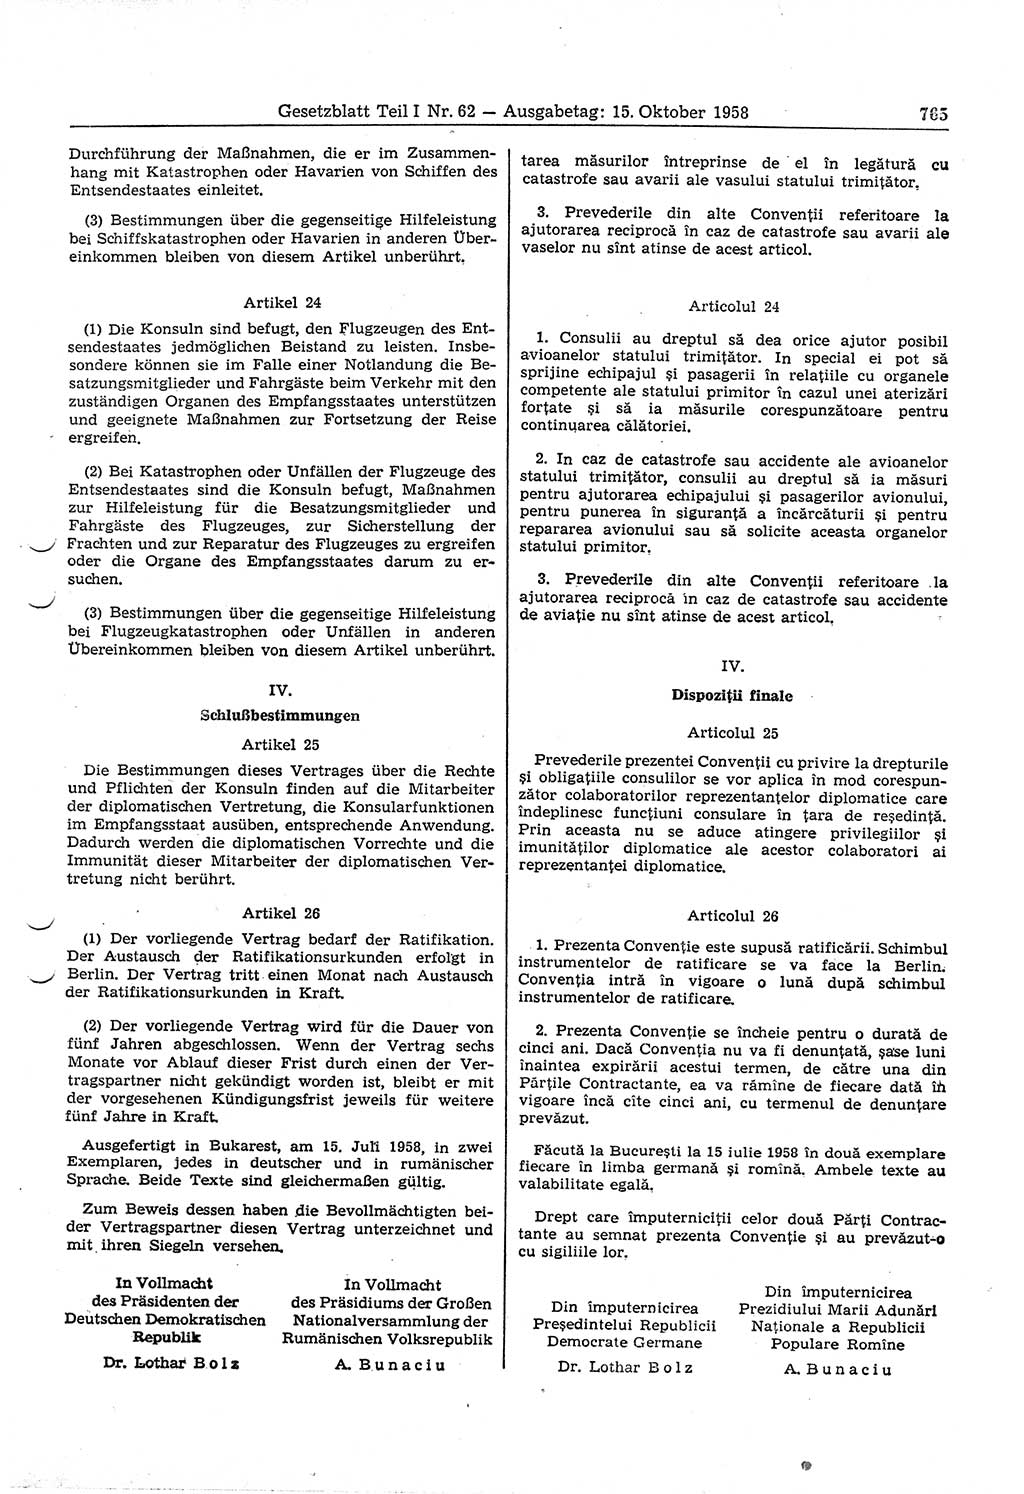 Gesetzblatt (GBl.) der Deutschen Demokratischen Republik (DDR) Teil Ⅰ 1958, Seite 765 (GBl. DDR Ⅰ 1958, S. 765)